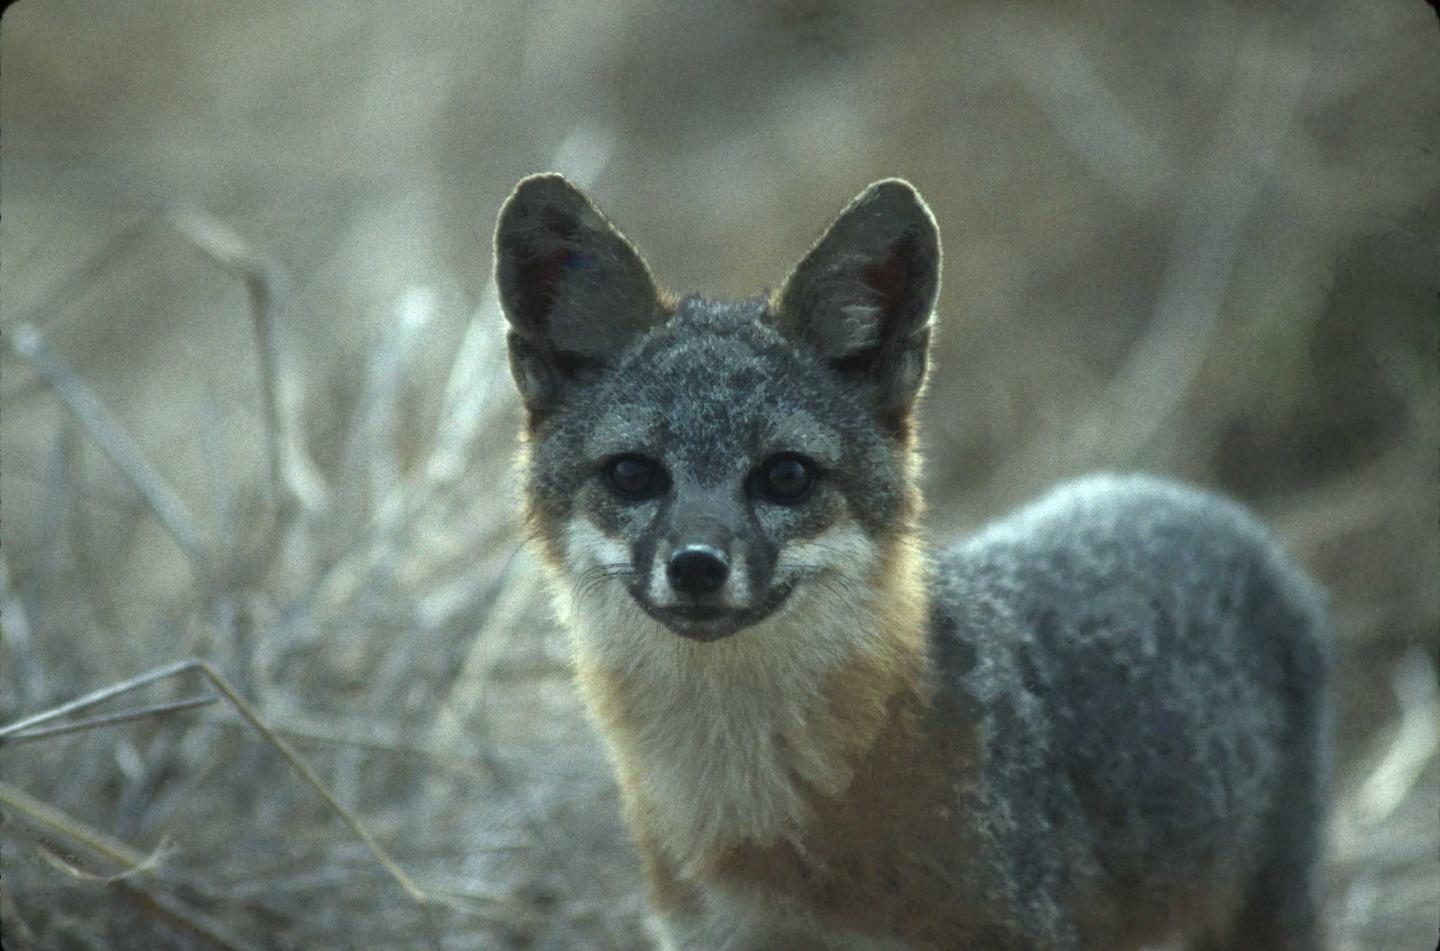 Channel Island fox